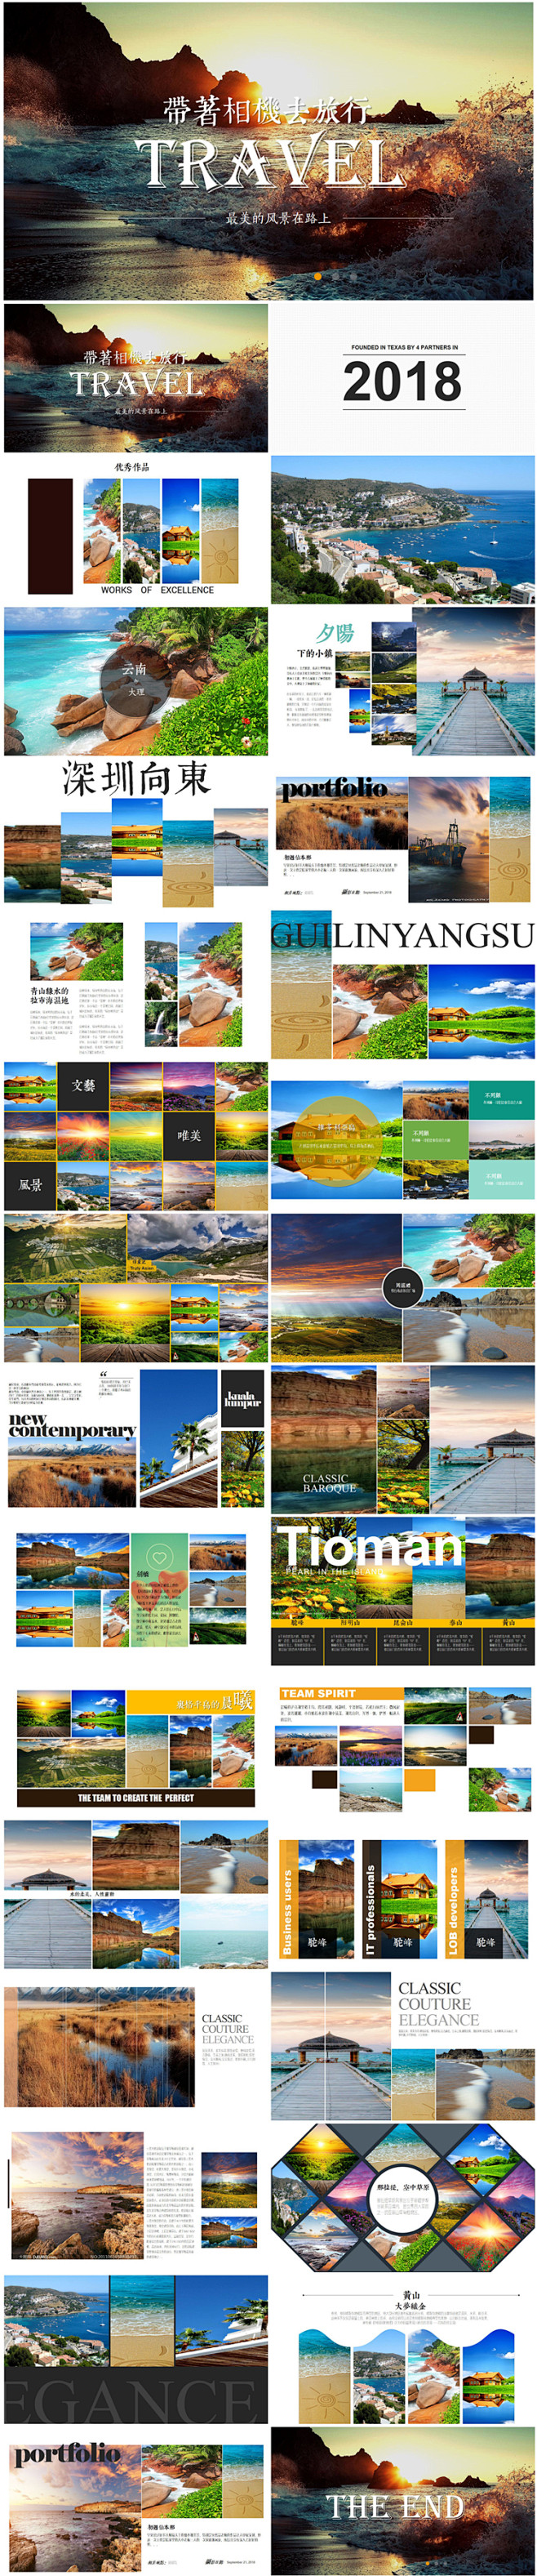  旅游度假摄影师画册旅行图片展示电子相册...